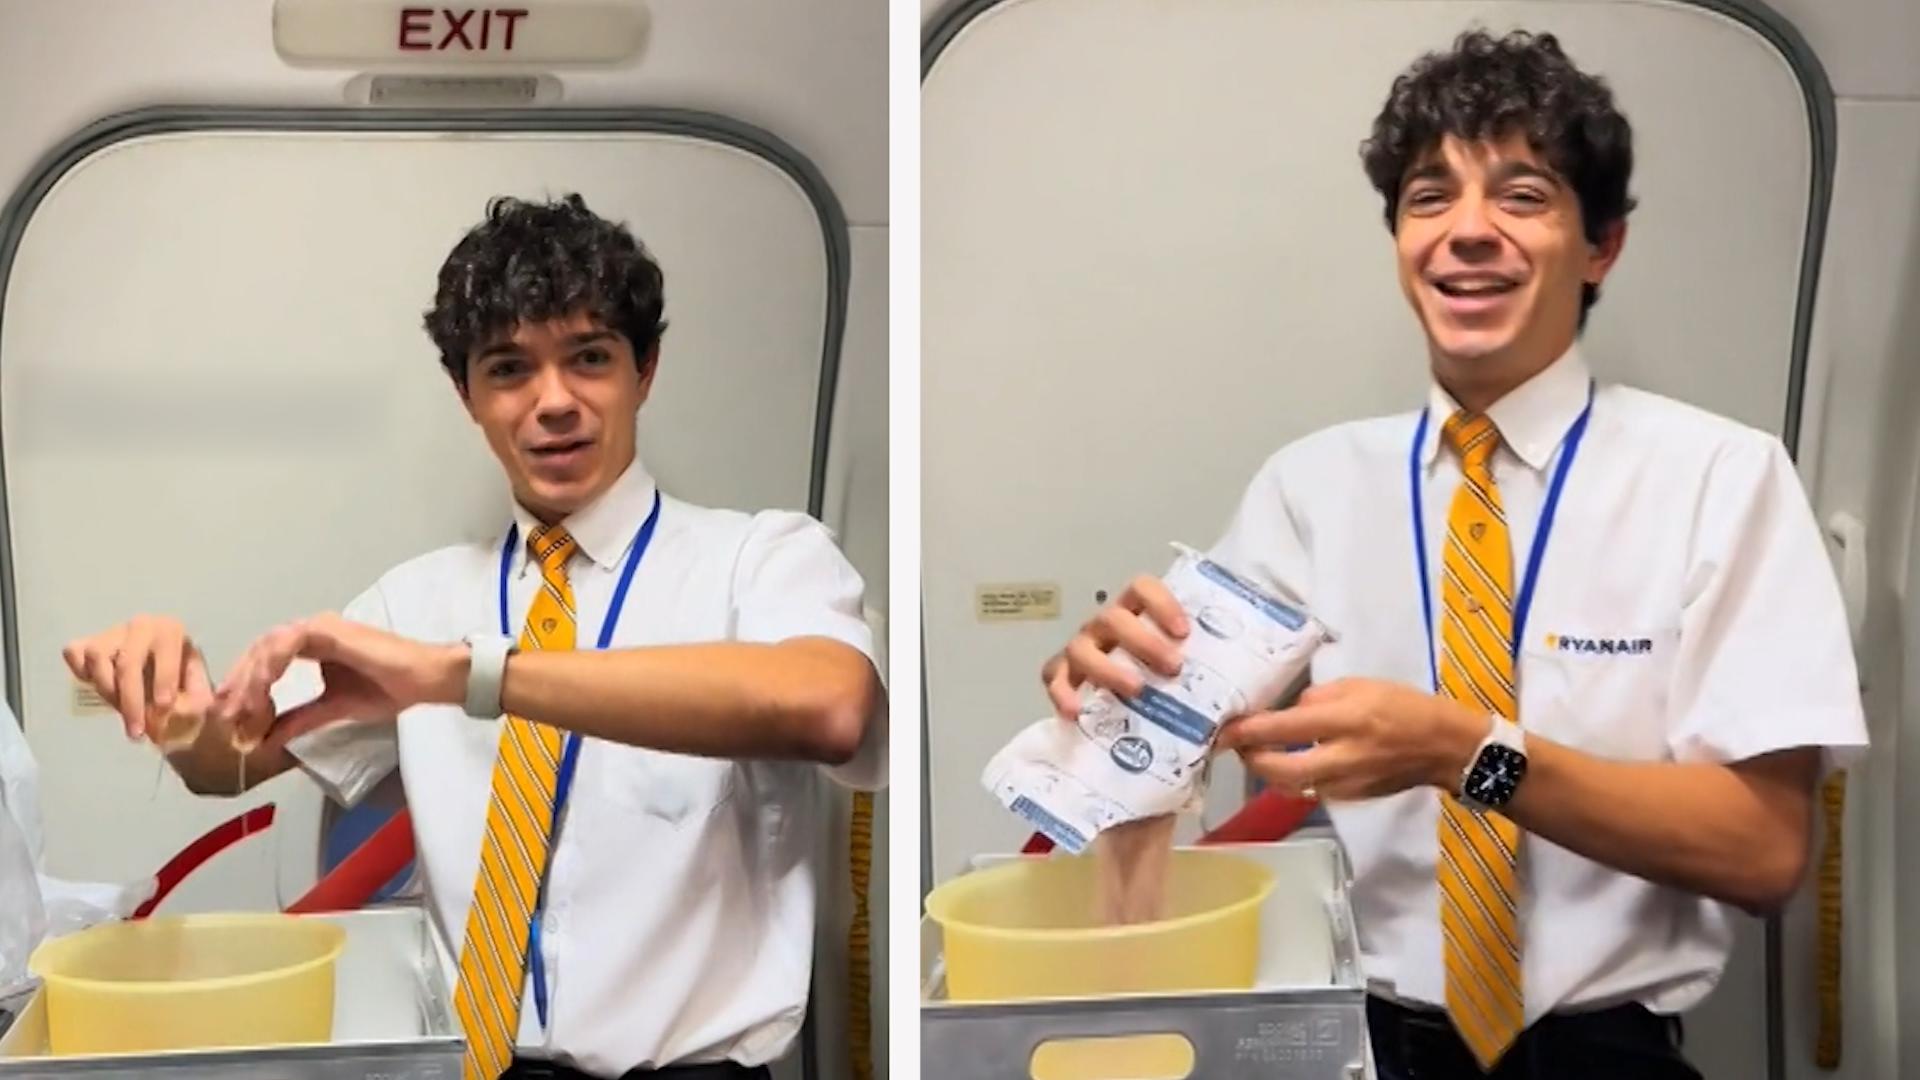 Wegen DIESER Aktion: Flugbegleiter wird von Airline gefeuert Quittung für seine TikTok-Videos?